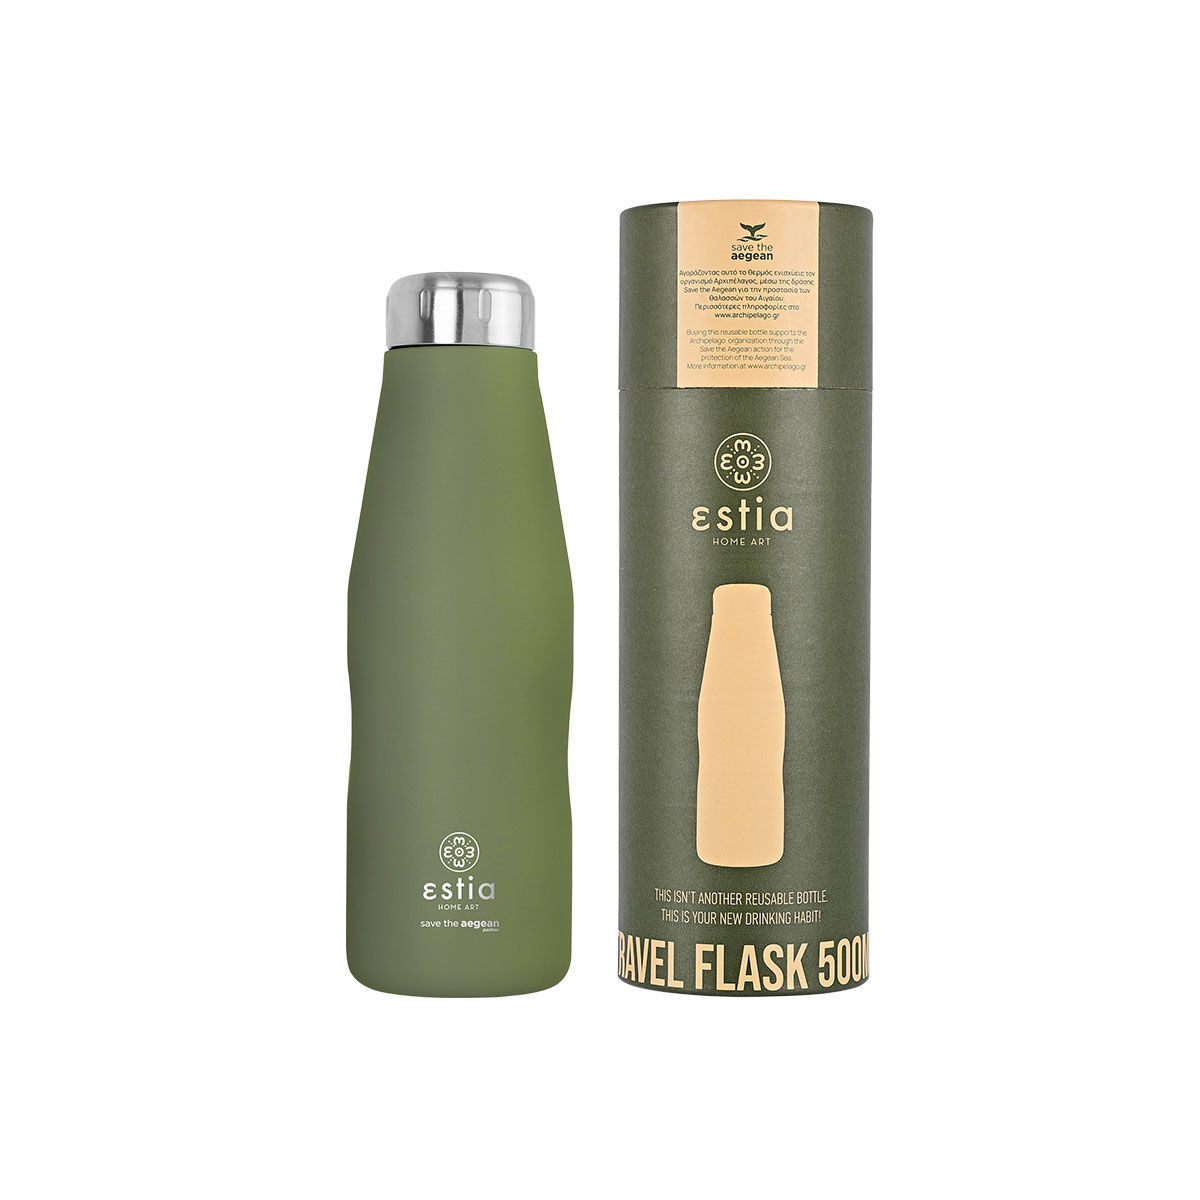 Θερμός-Μπουκάλι Ανοξείδωτο Forest Spirit Flask Save The Aegean Estia 500ml-7x7x22,3εκ. 01-12069 (Υλικό: Ανοξείδωτο, Χρώμα: Πράσινο ) – estia – 01-12069